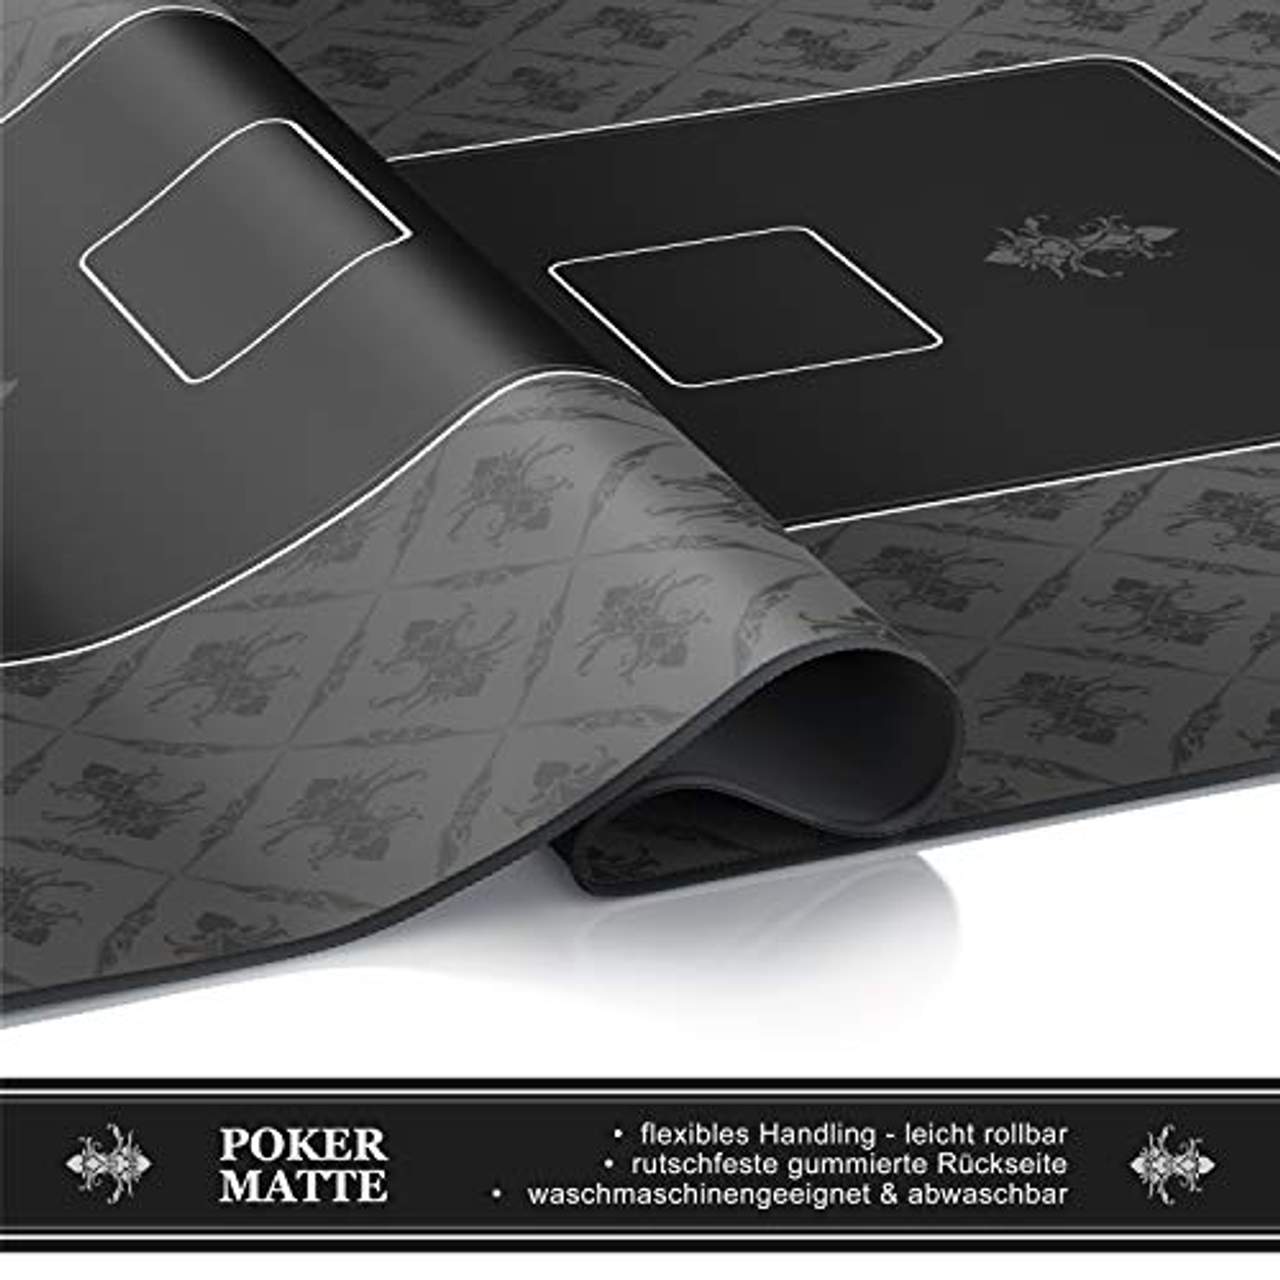 CSL-Computer Profi Pokermatte 1000 x 600 mm